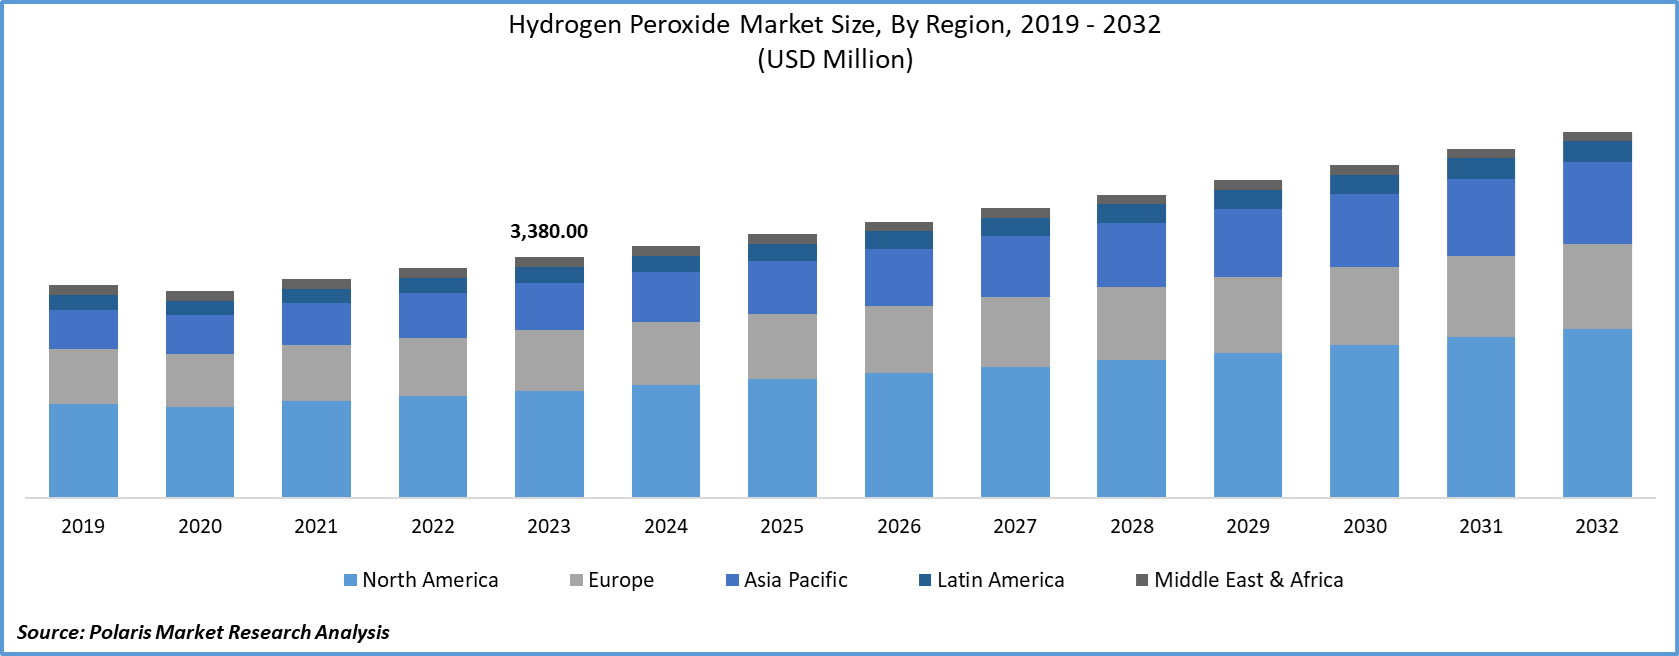 Hydrogen Peroxide Market Size